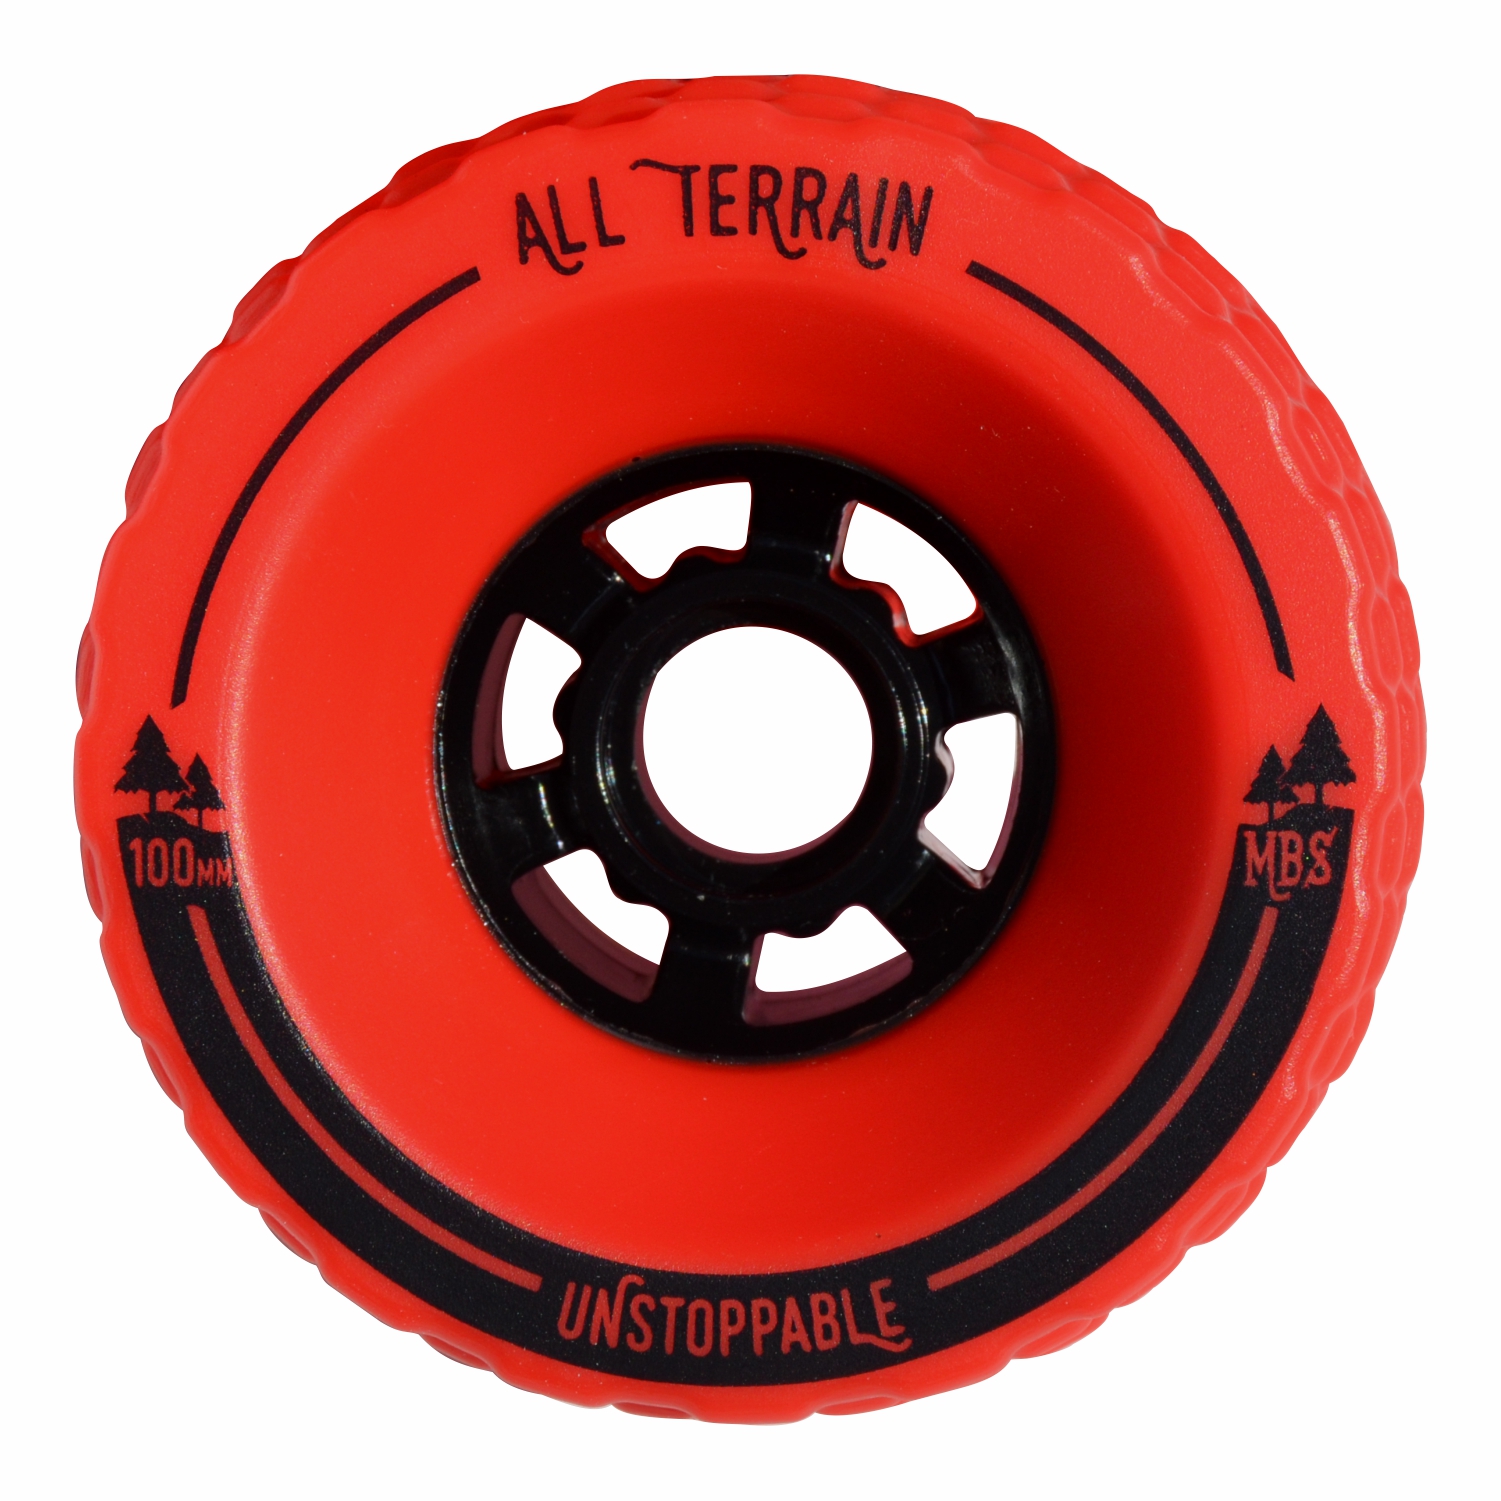 13403 - MBS All-Terrain Skateboard Wheels - Red (4) — Atom Longboards